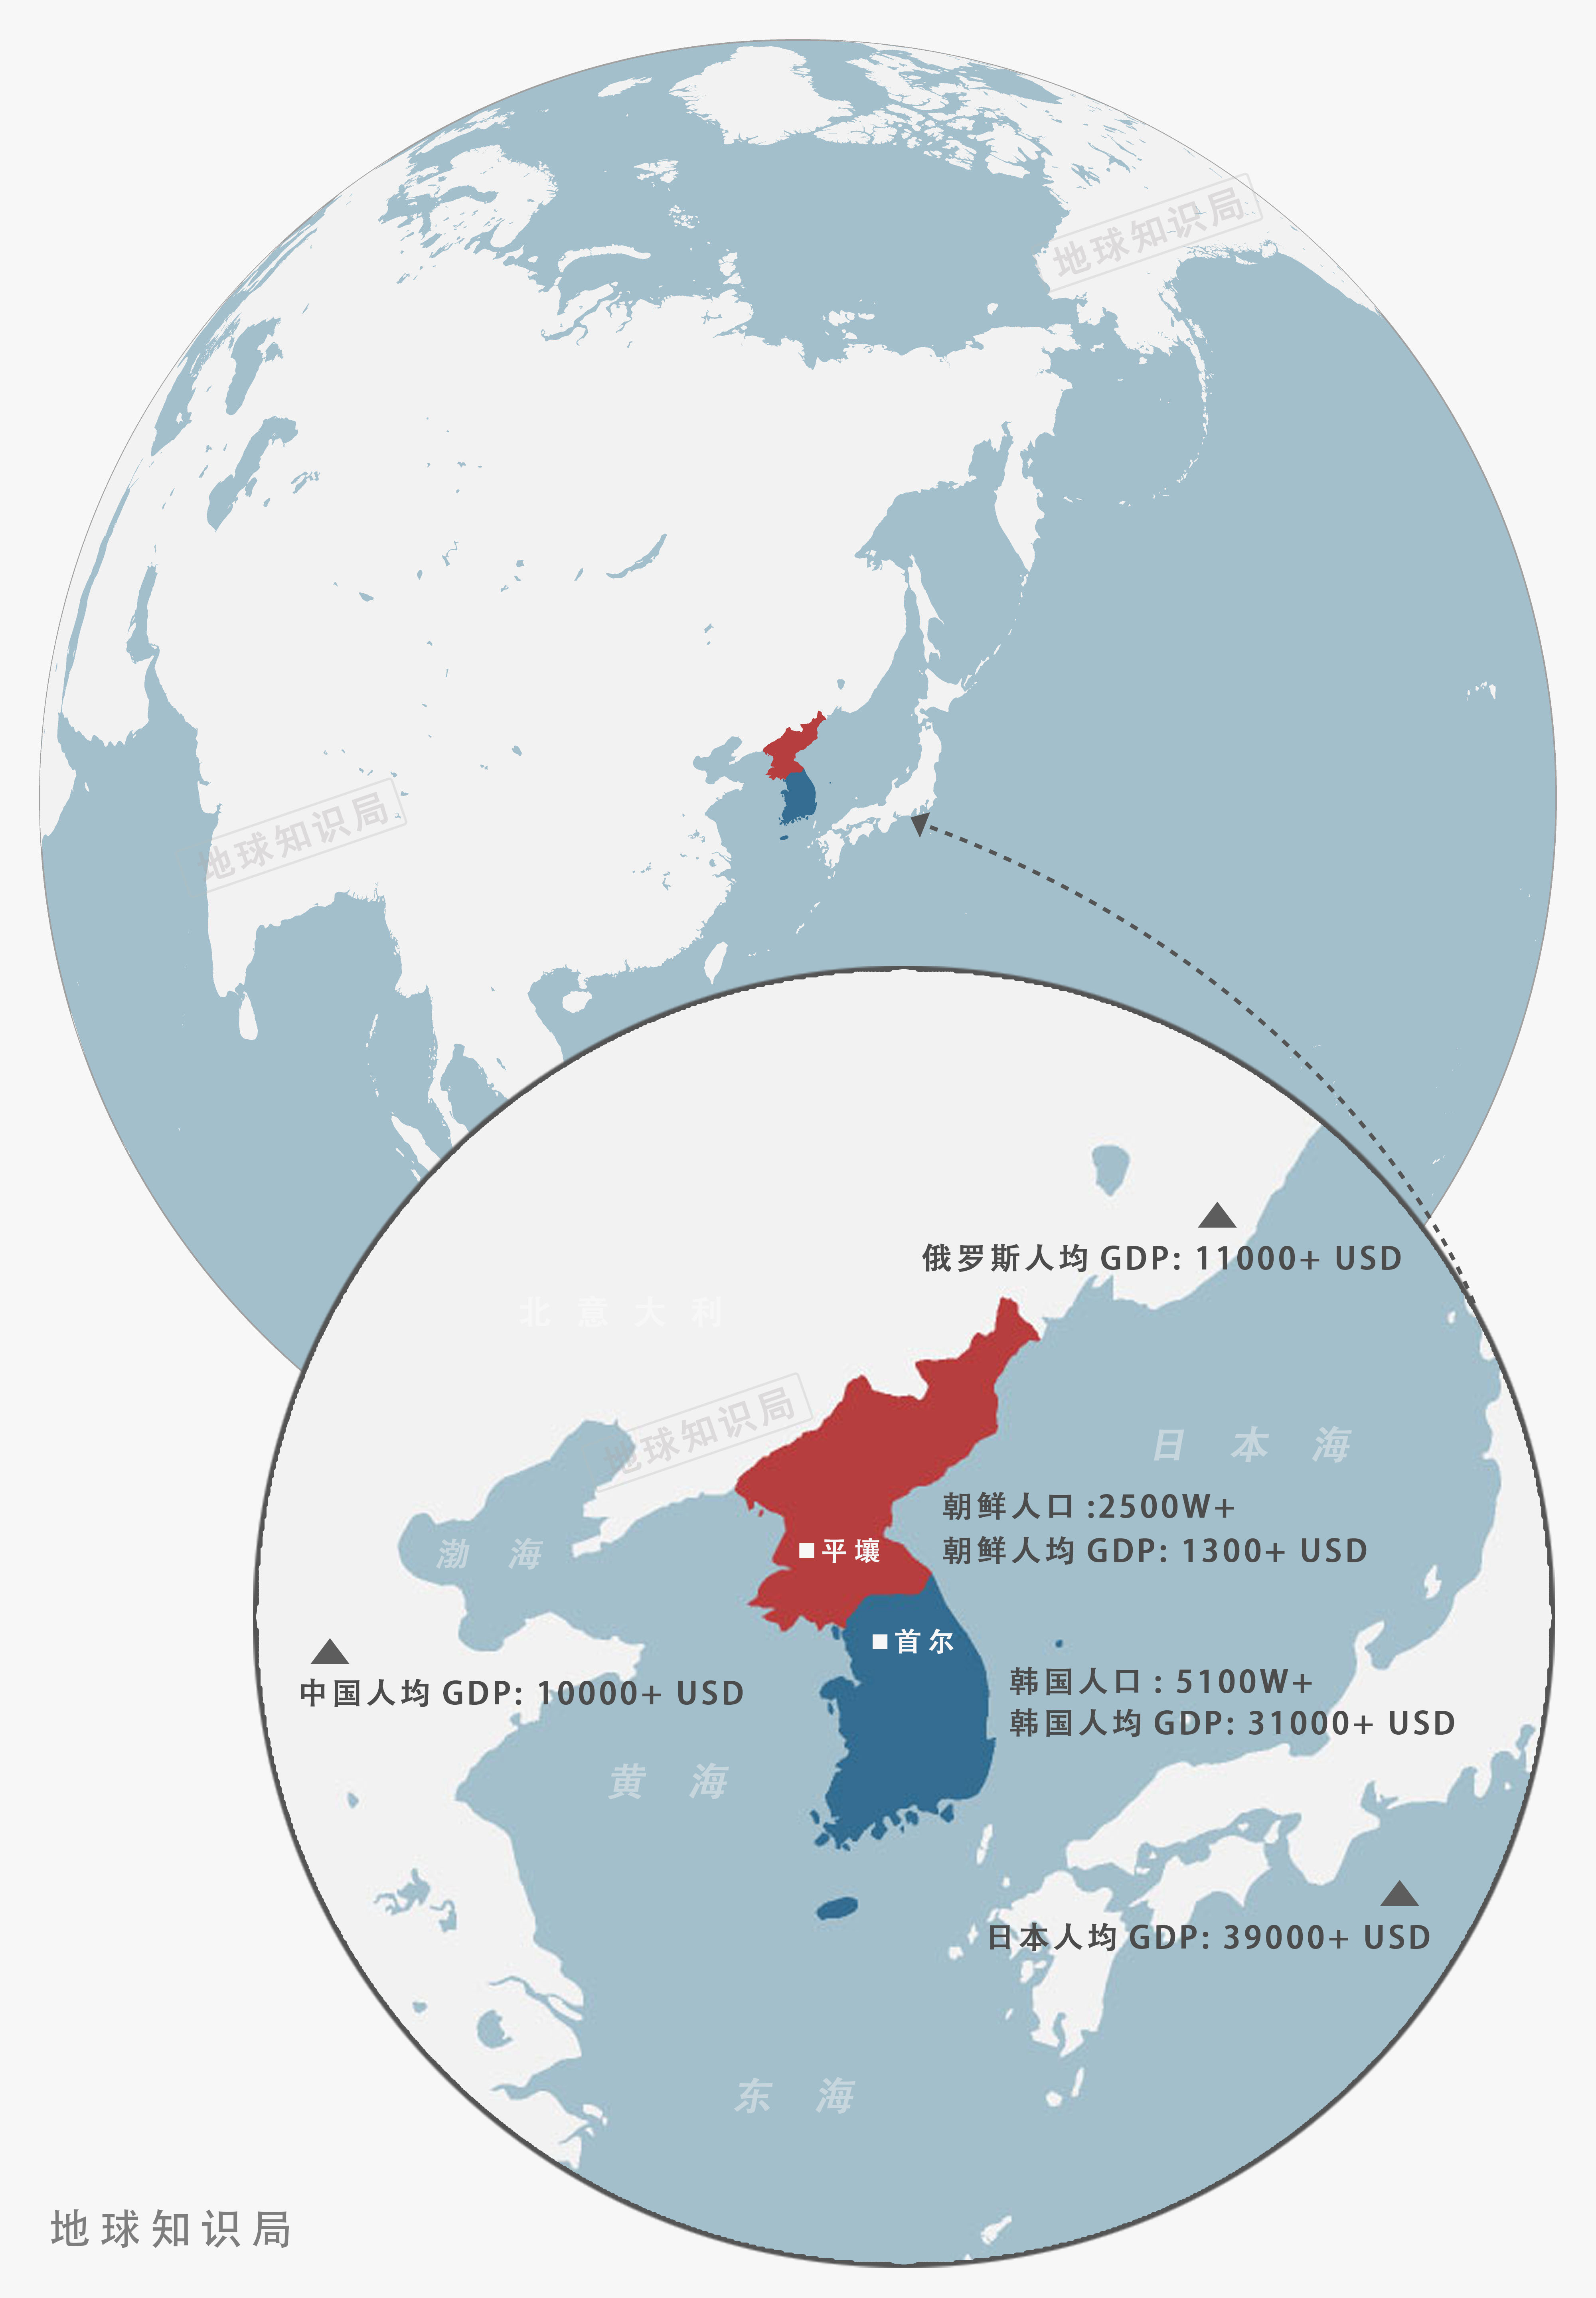 朝鲜地图 - 朝鲜地图高清版 - 朝鲜地图中文版